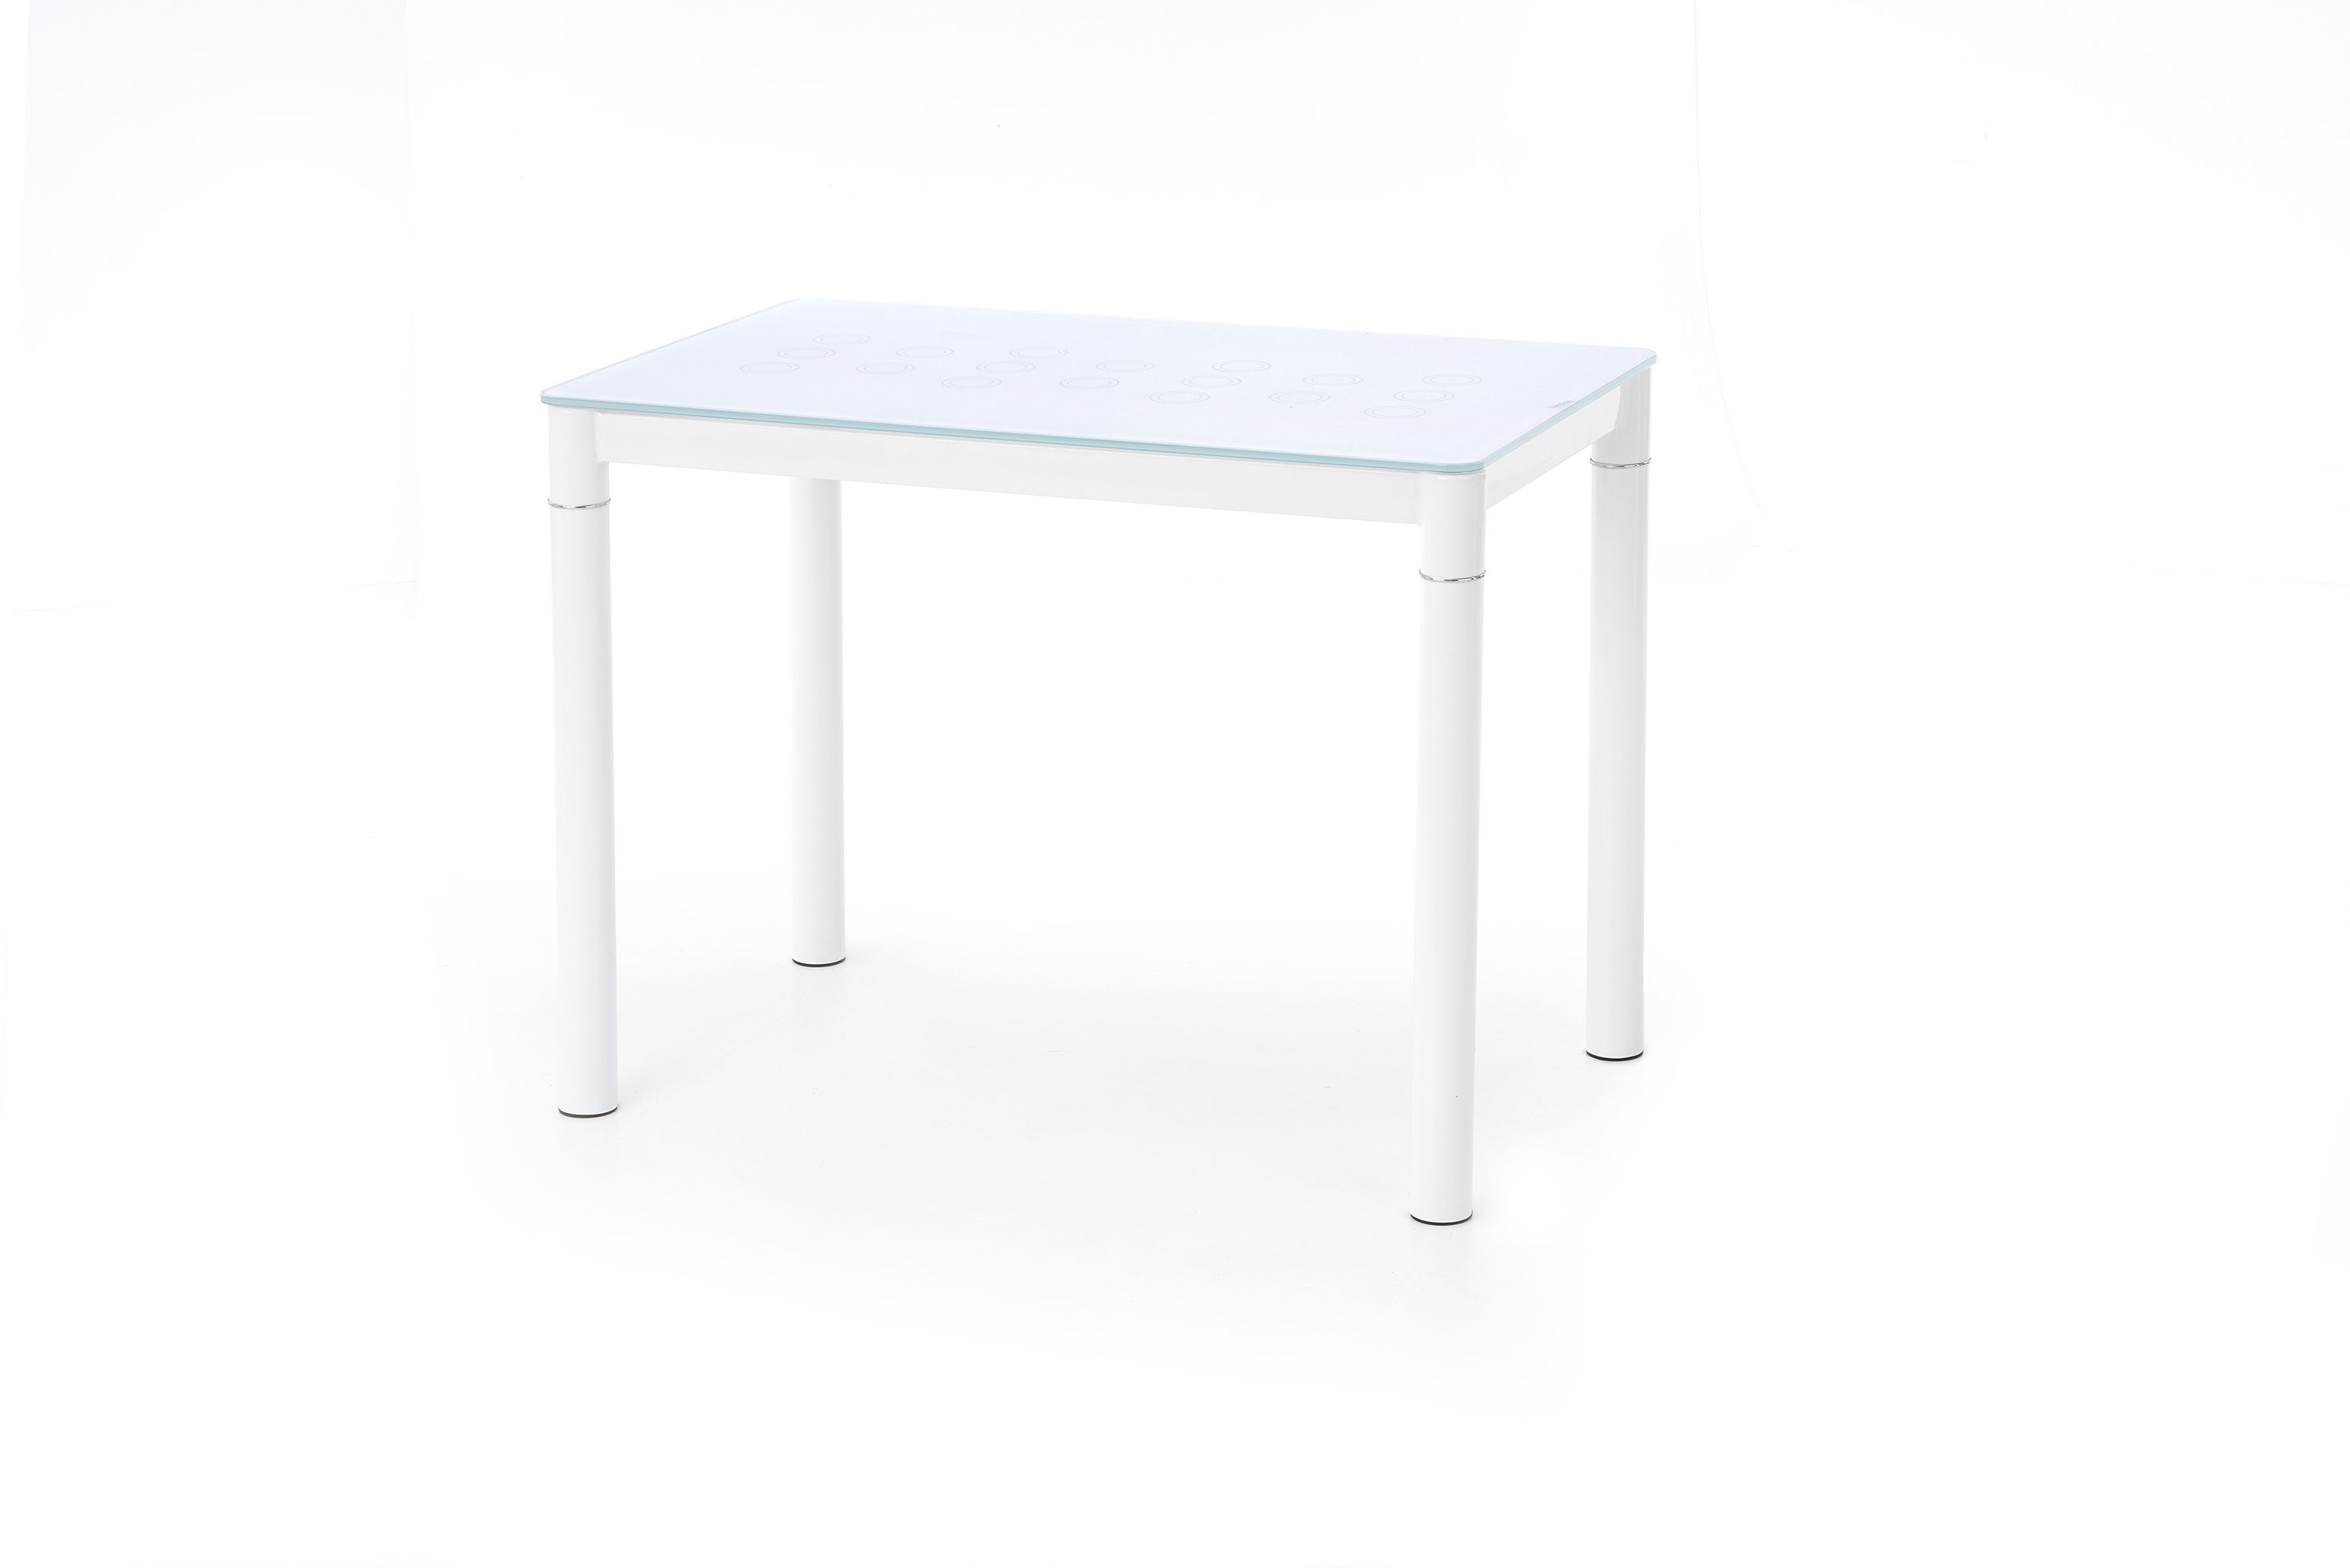 Stôl do jedálne Argus 100x60 cm - mliečne sklo / biela Stół do jadalni Argus ze szklanym blatem 100x60 - mleczny / biały